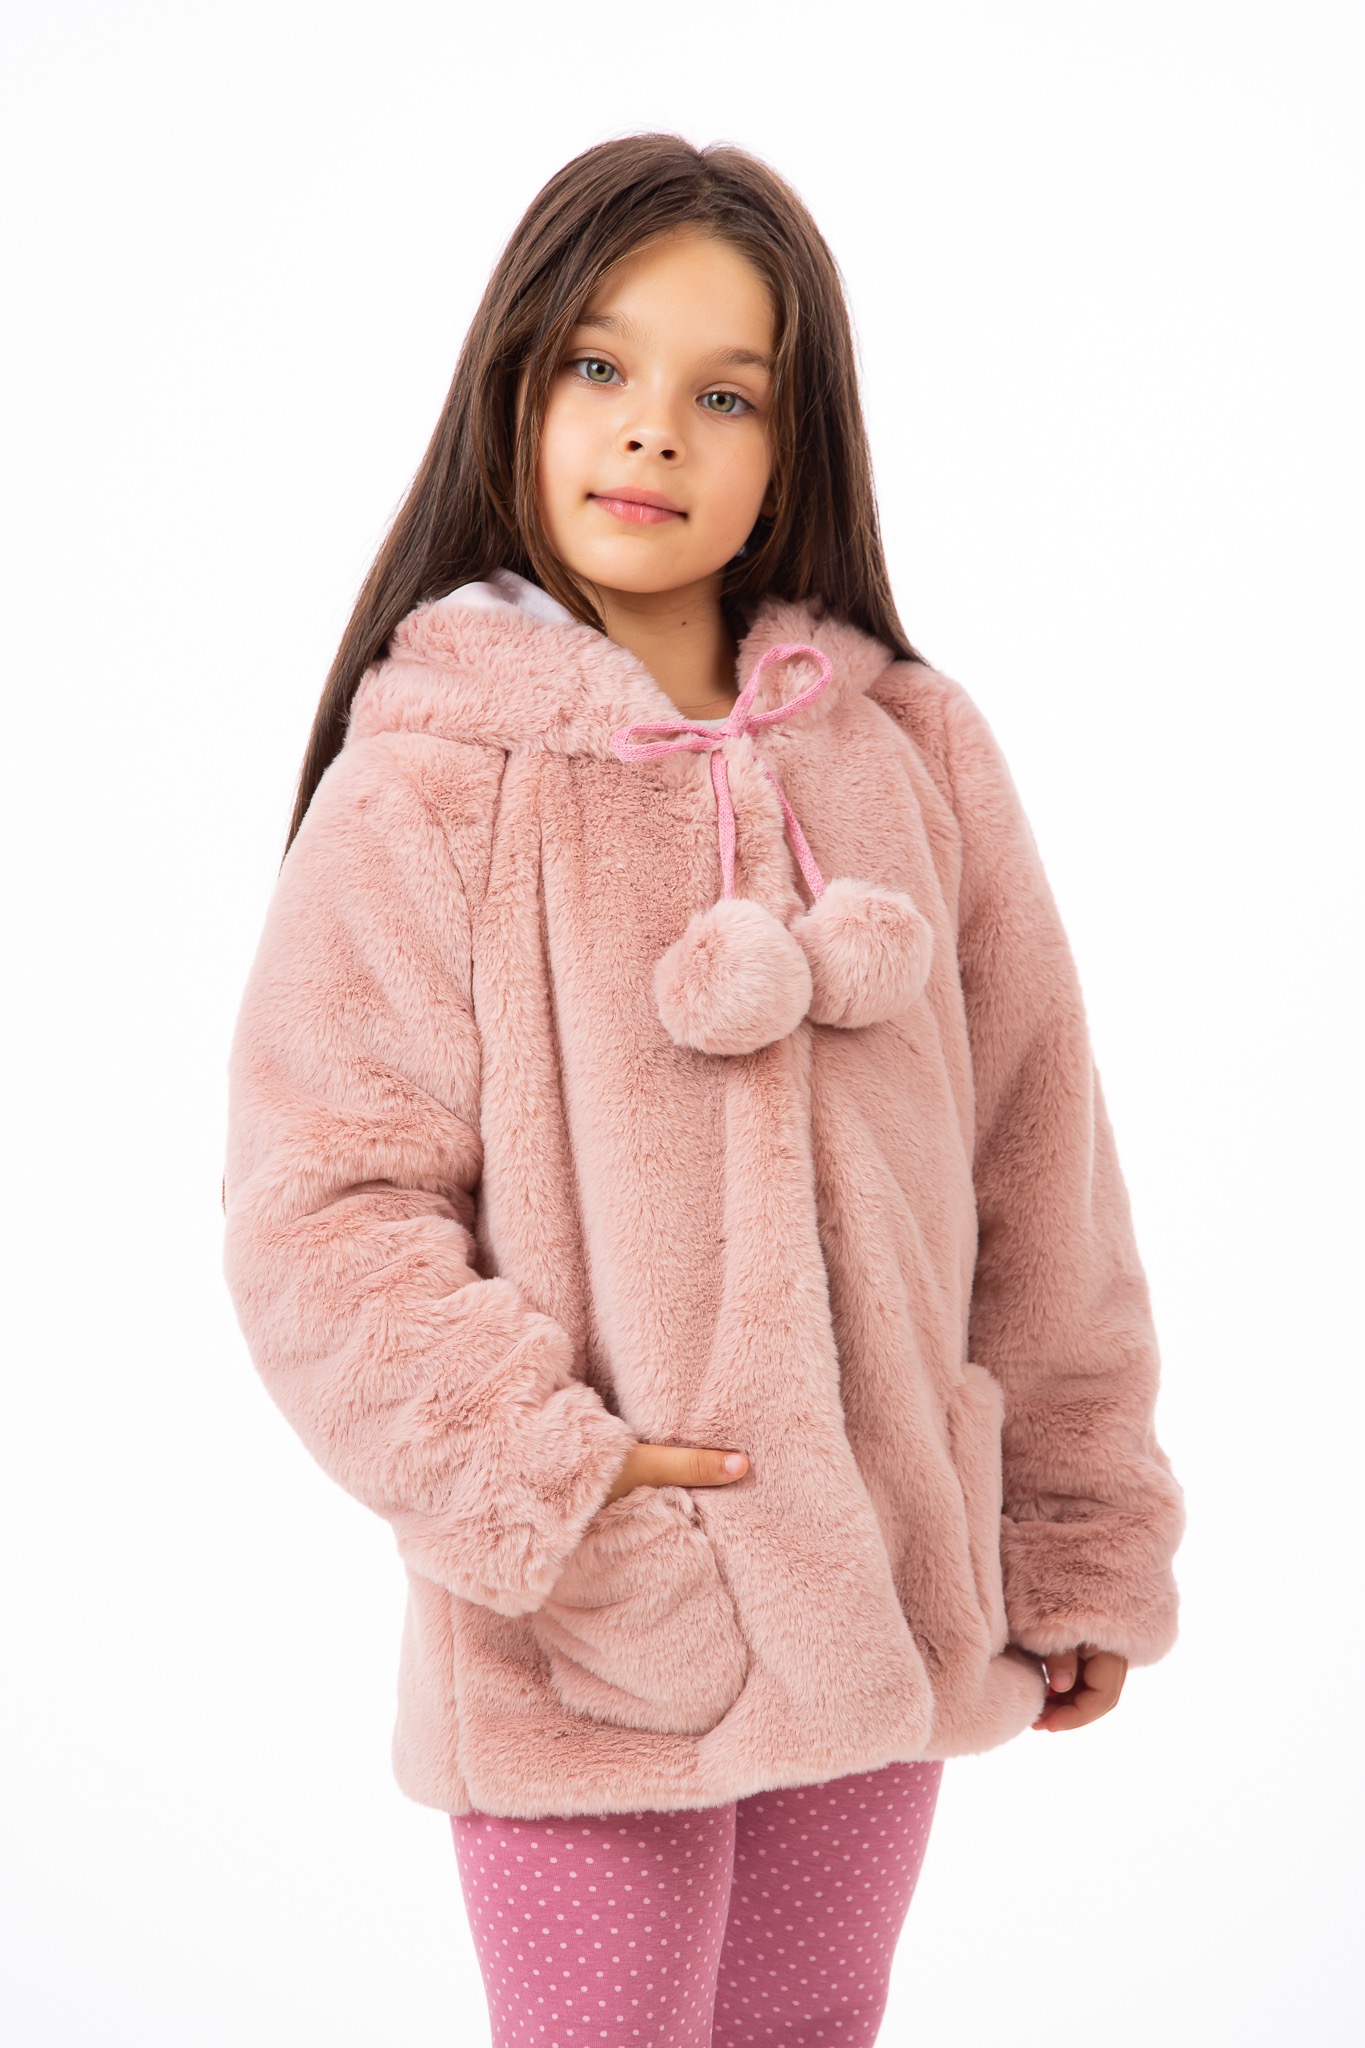 Electrical Innocence Alert Urson din blăniță ecologică pufoasă ieftin, paltonaș elegant fetițe